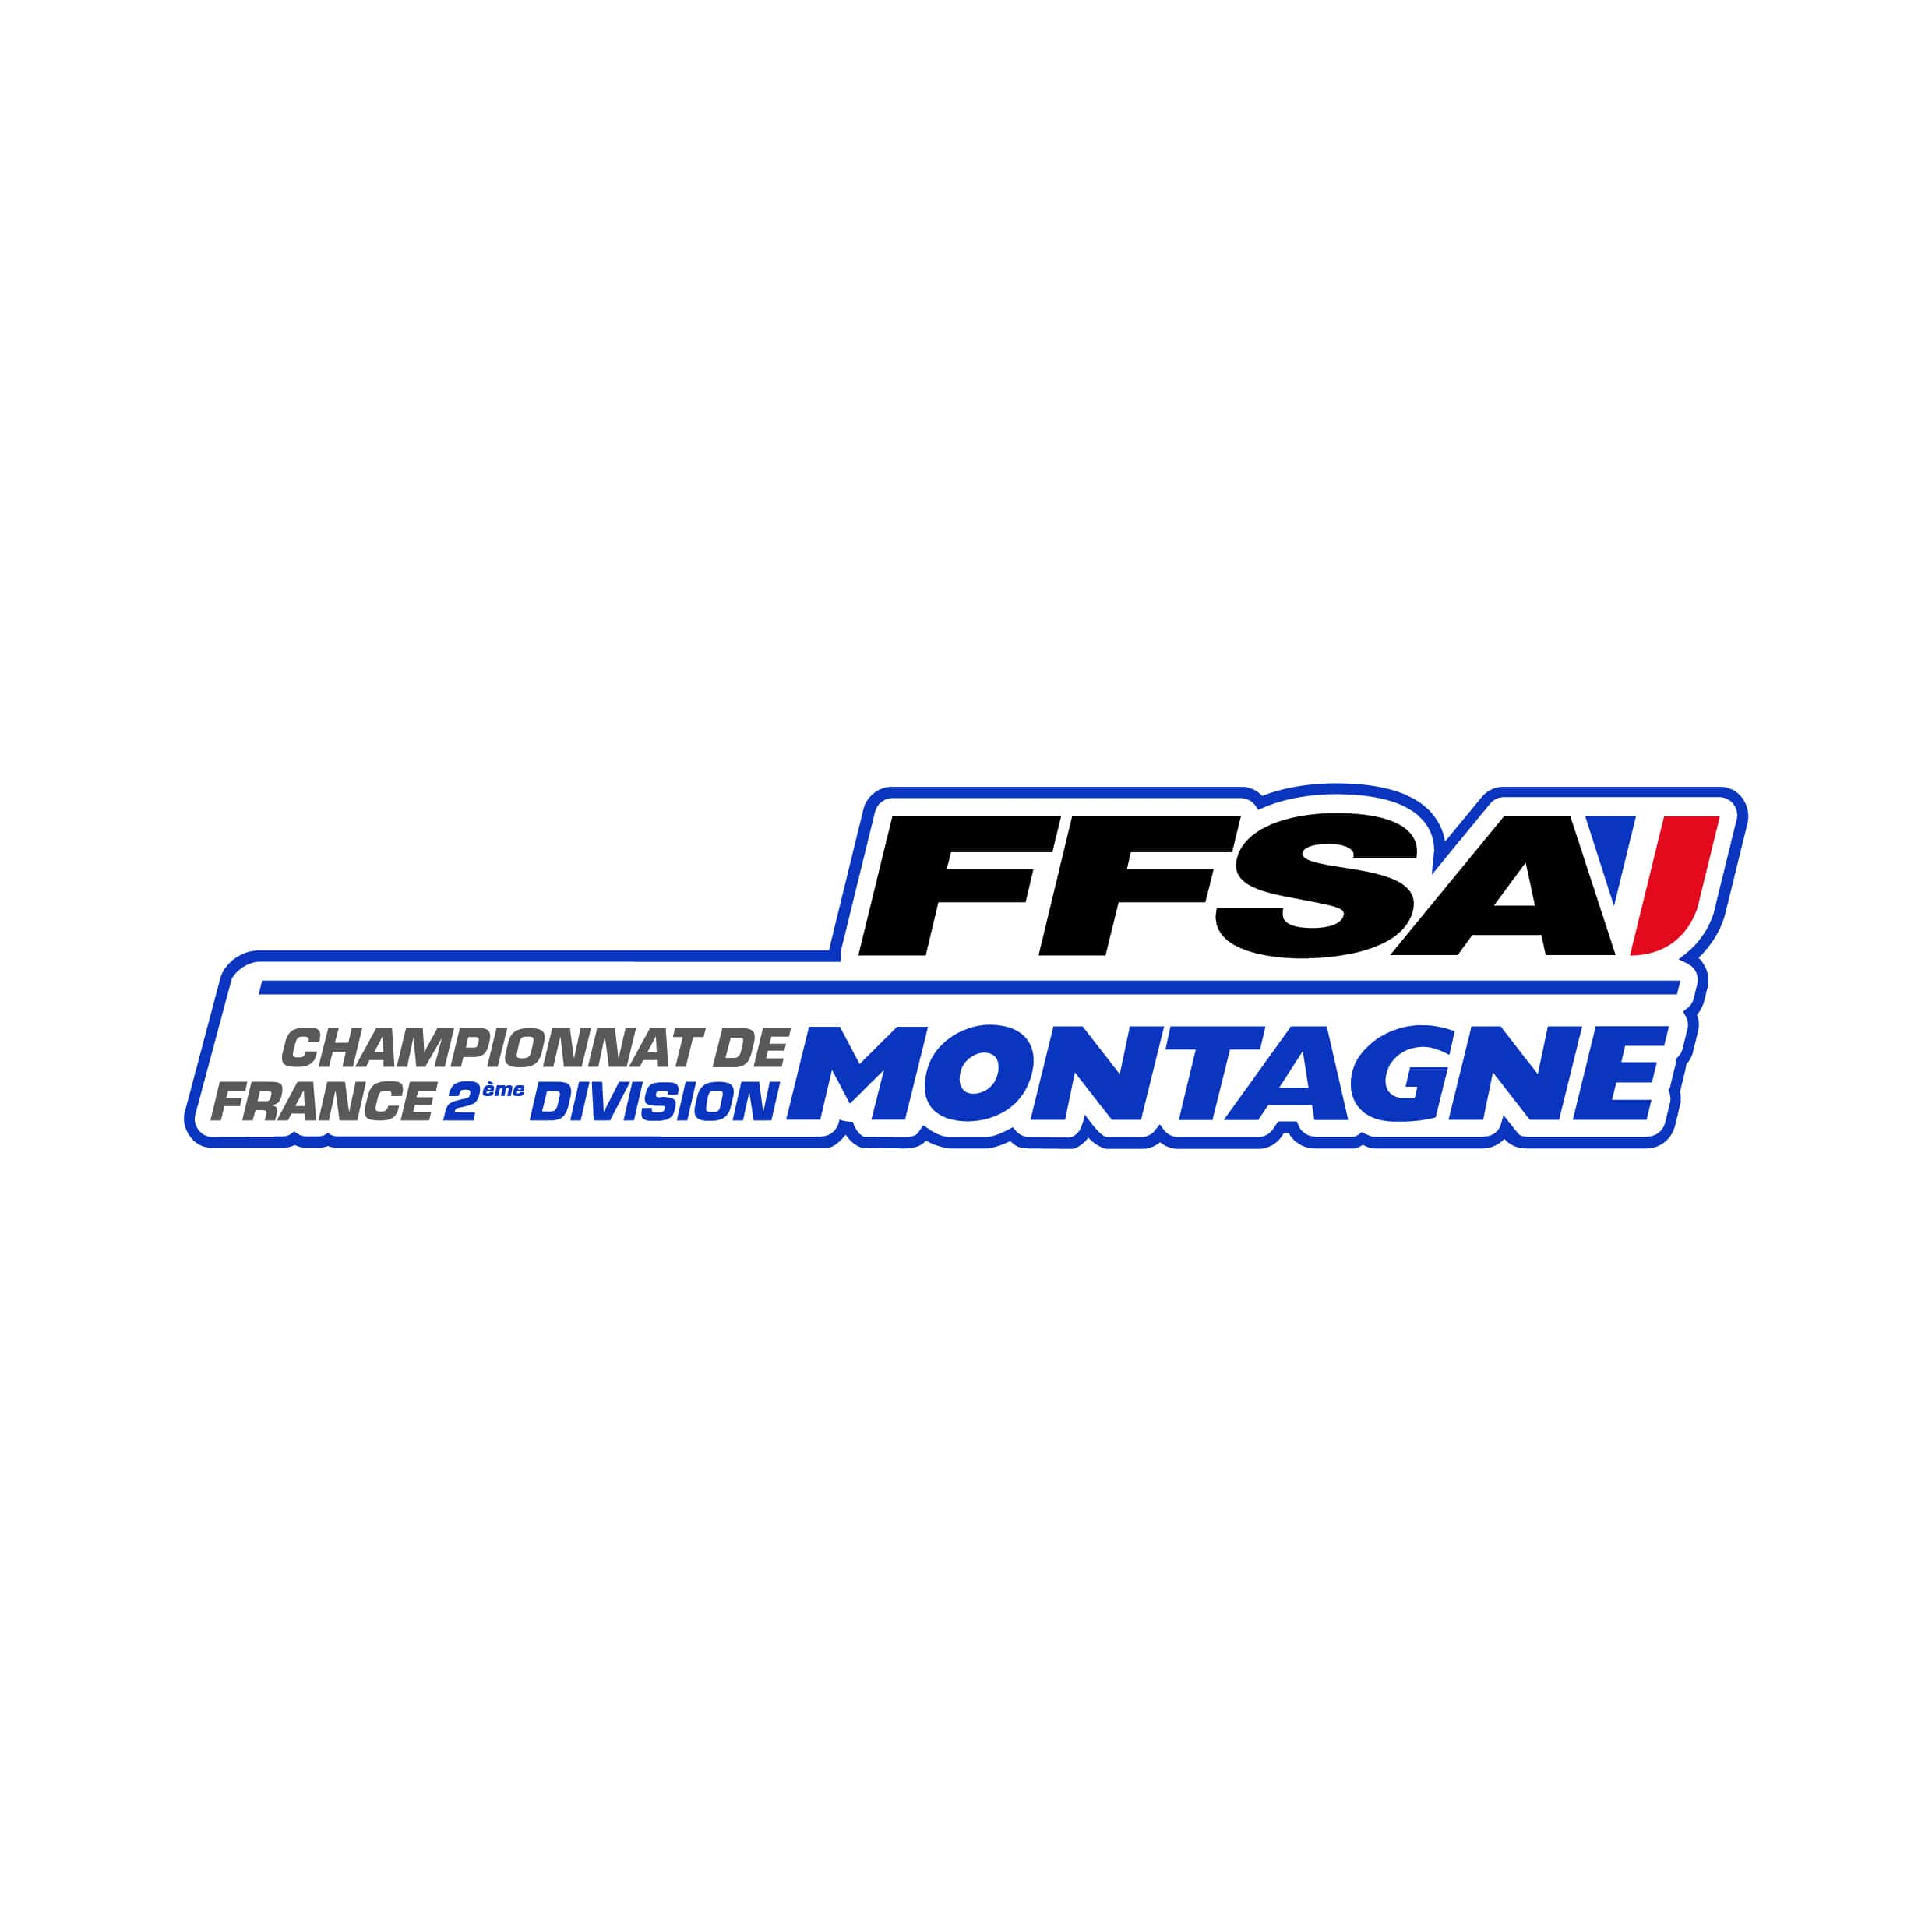 stickers-ffsa-championnat-france-2eme-division-montagne-ref19-sport-automobile-autocollant-voiture-sticker-auto-autocollants-decals-racing-min